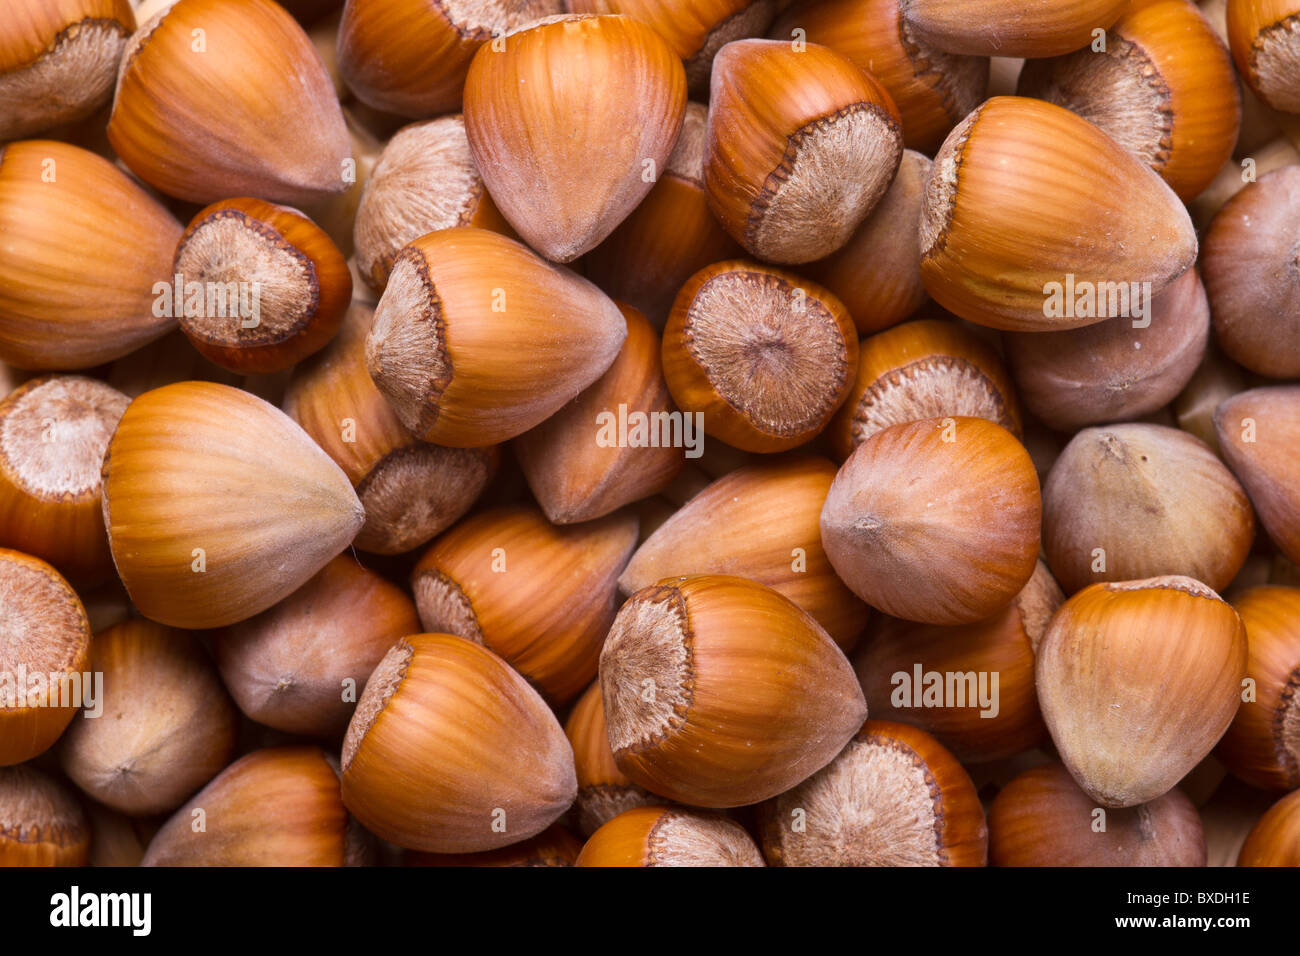 Hazelnut background - top view of fresh hazelnuts Stock Photo